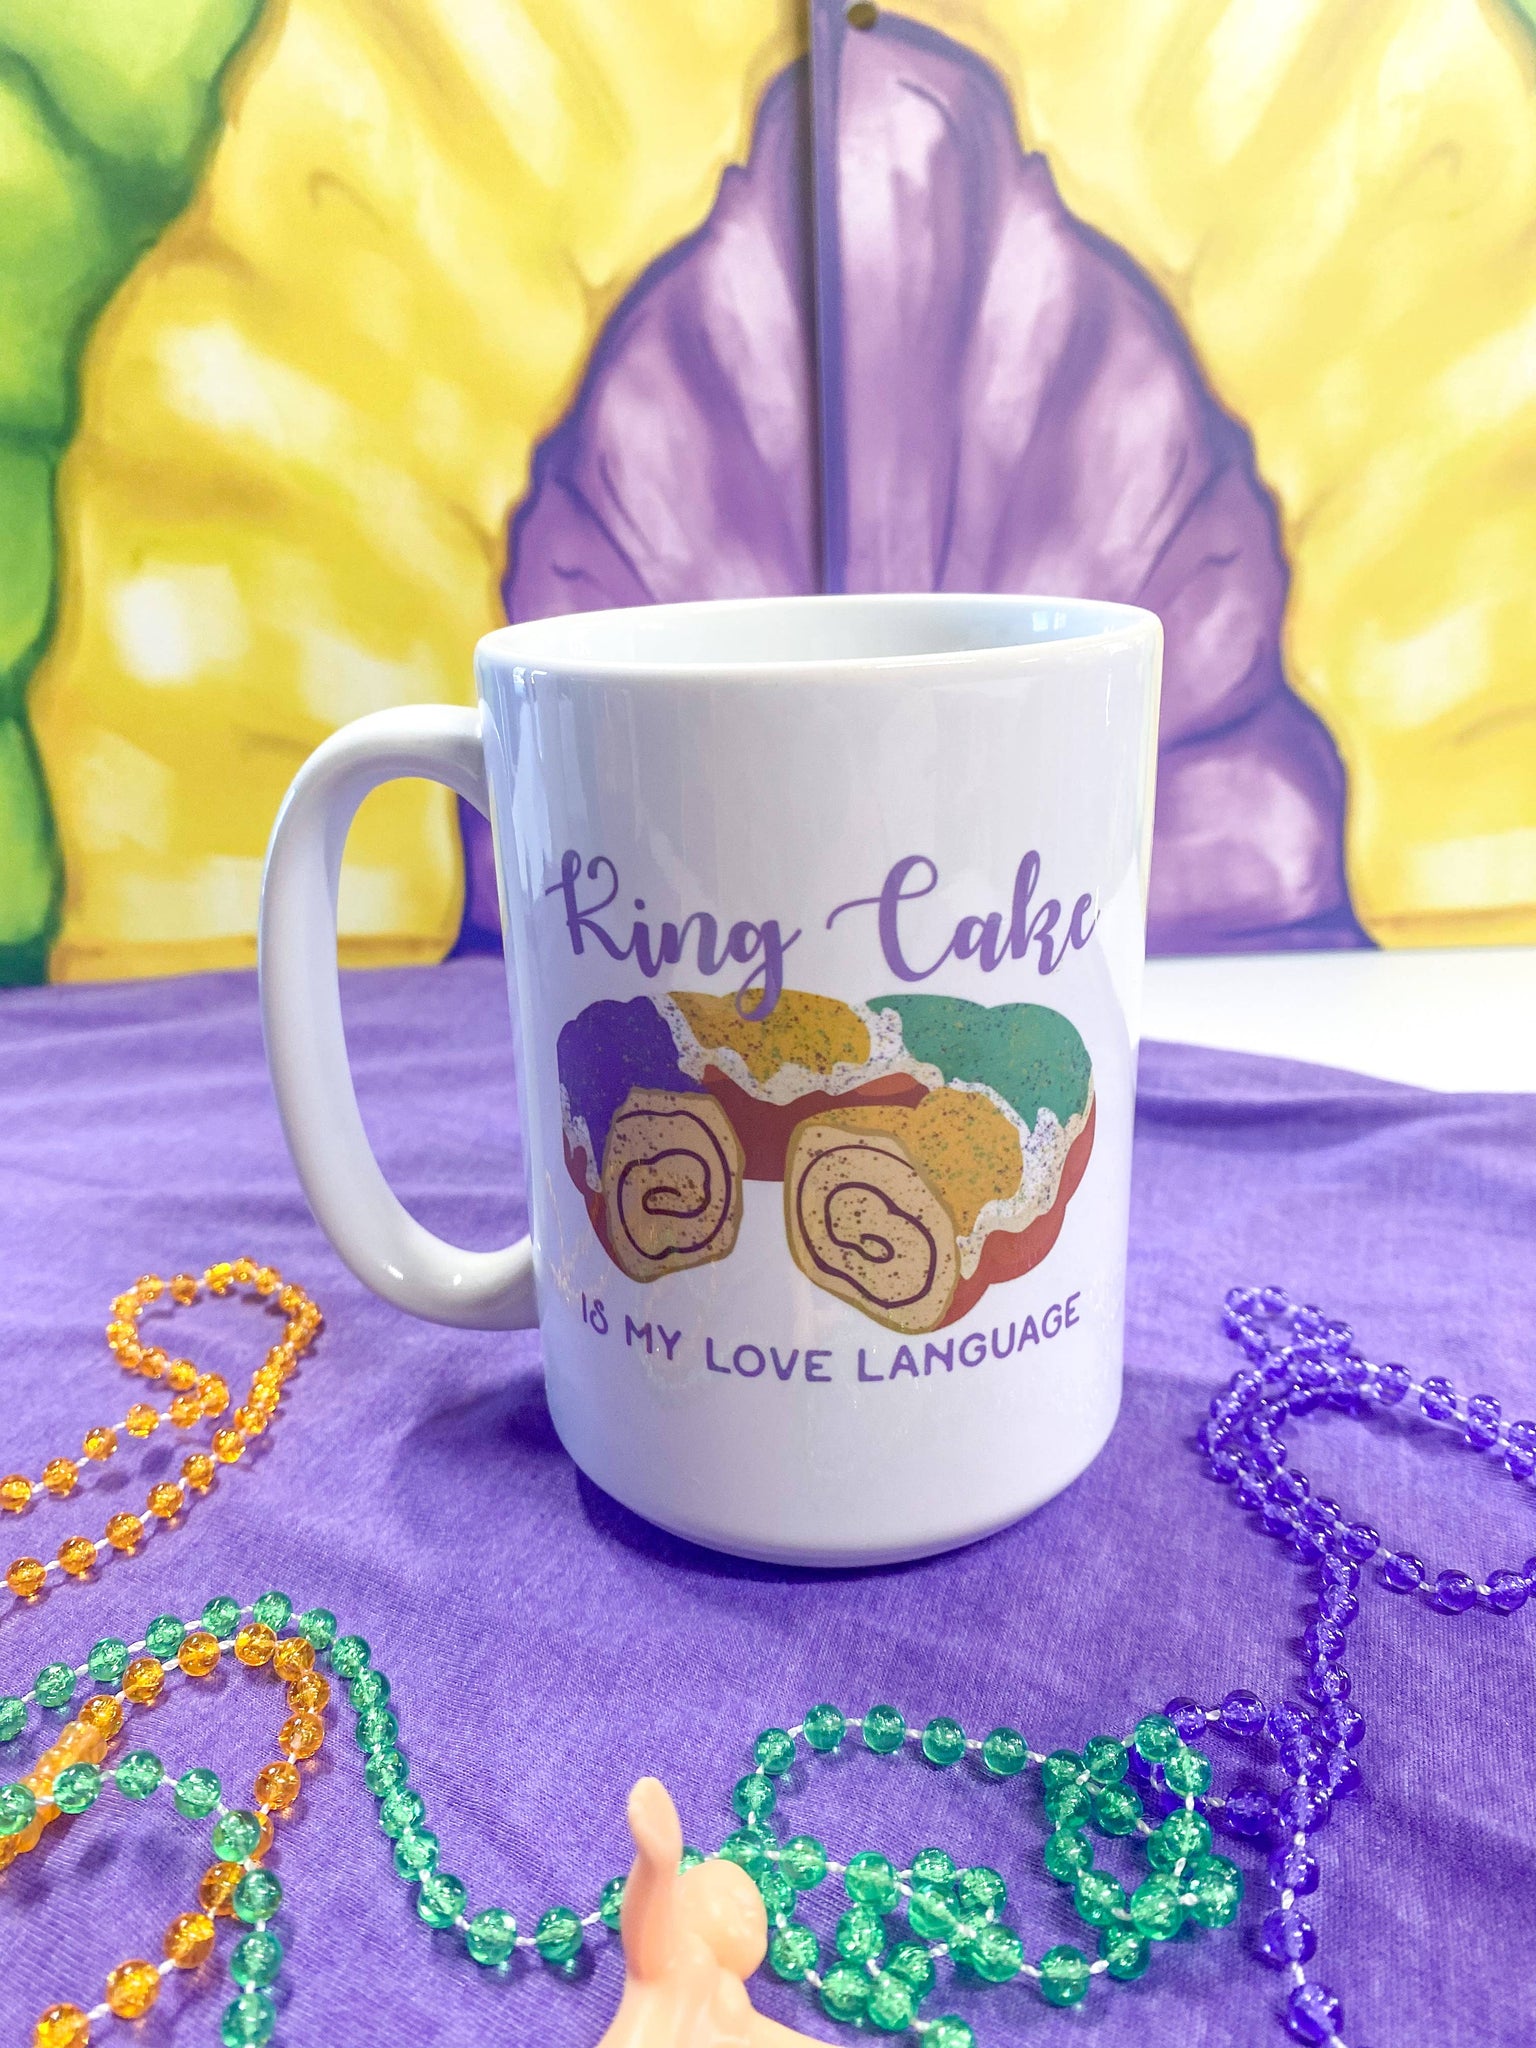 King Cake is My Love Language Coffee Mug